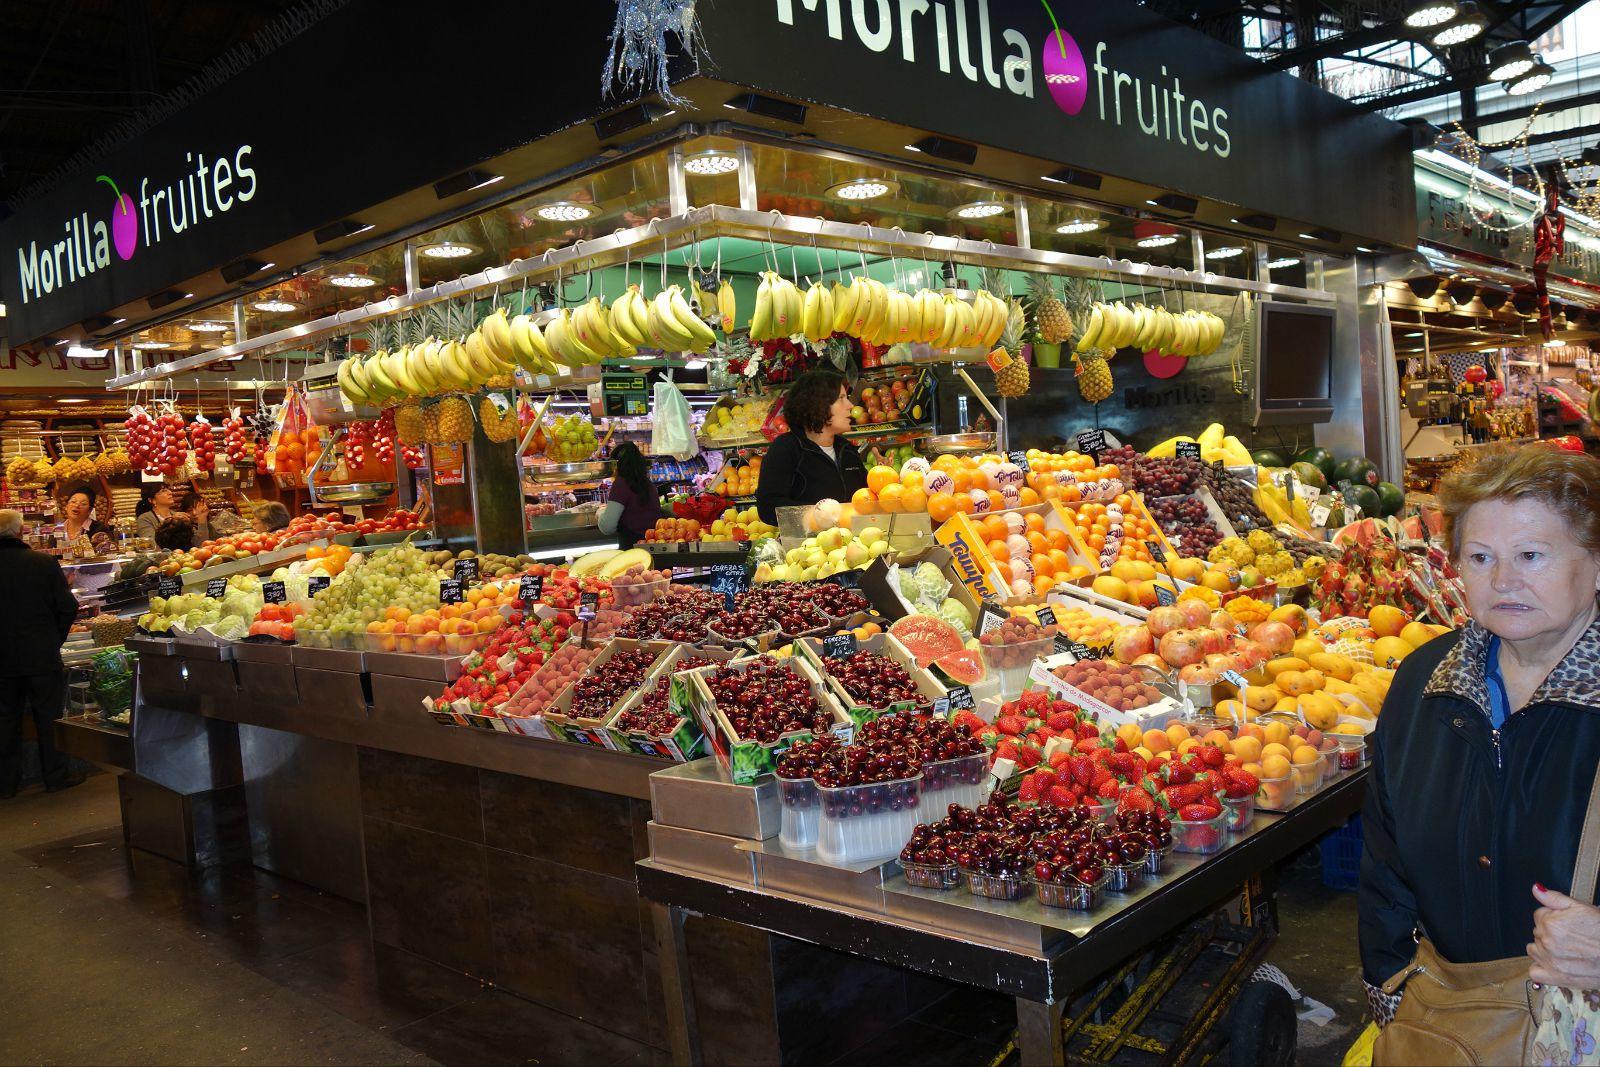 走进市场,各种当地出产的蔬菜水果,新鲜而饱满,泛着令人愉悦